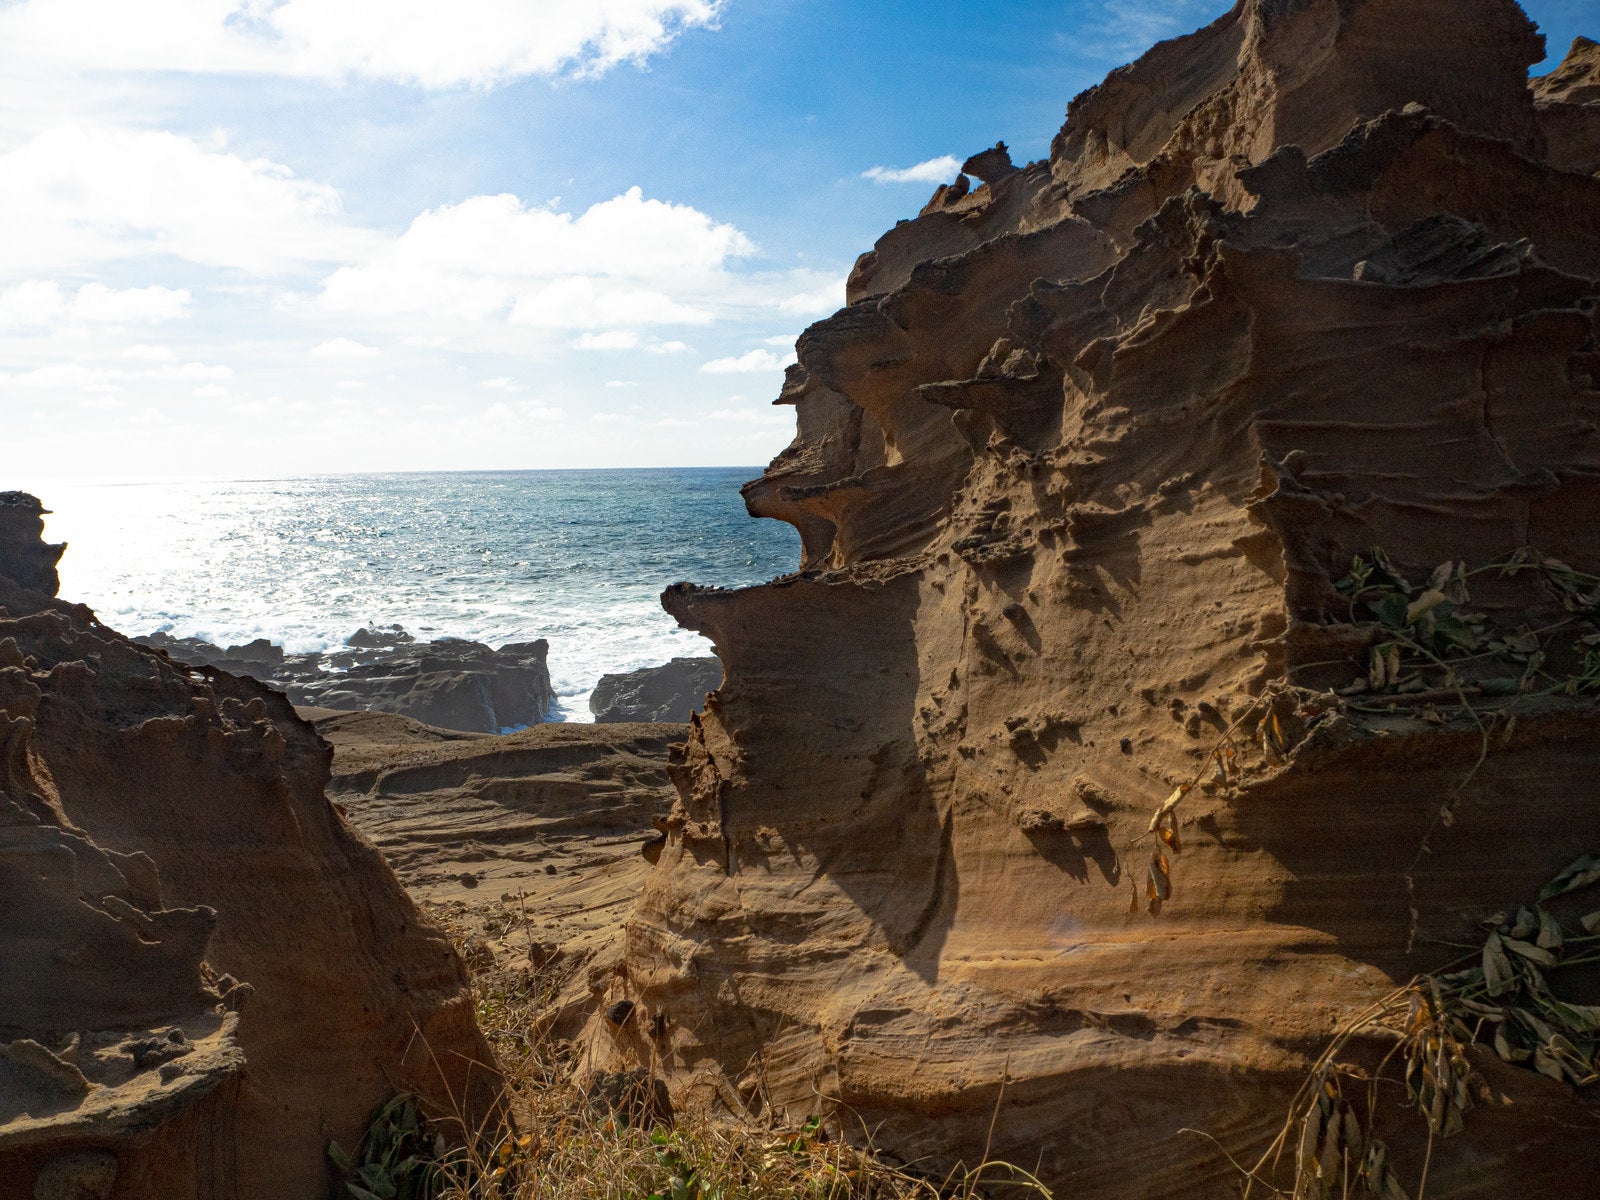 「釜岩の奇石の合間から見える輝く海」の写真